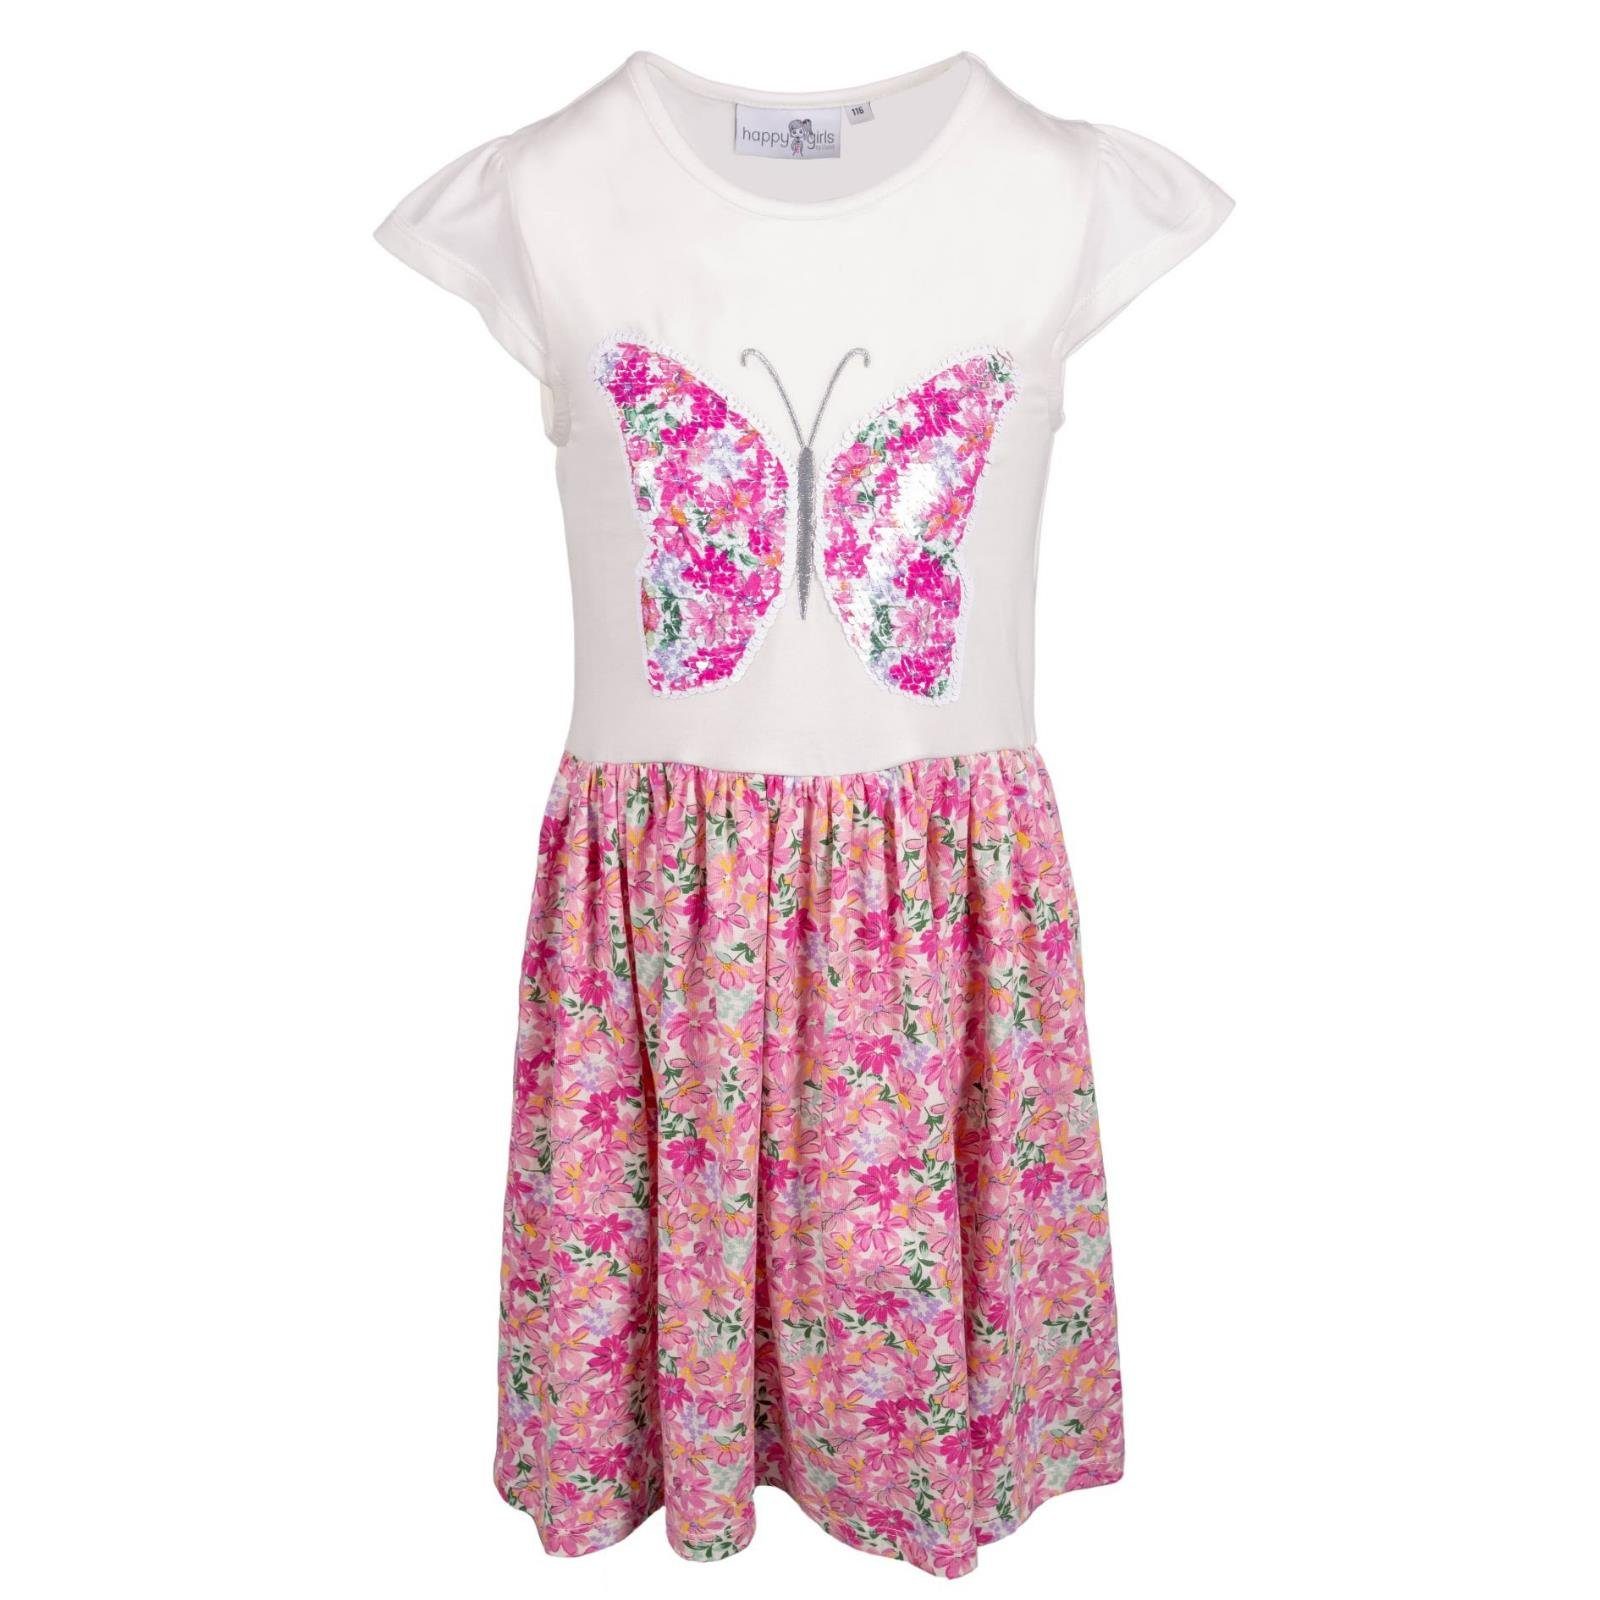 happy girls A-Linien-Kleid Happy Girls Kleid Pink Schmetterling Pailetten für Mädchen leichtes sommerliches Kleid kurzarm mit Schmetterling Blumenprint und Pailetten